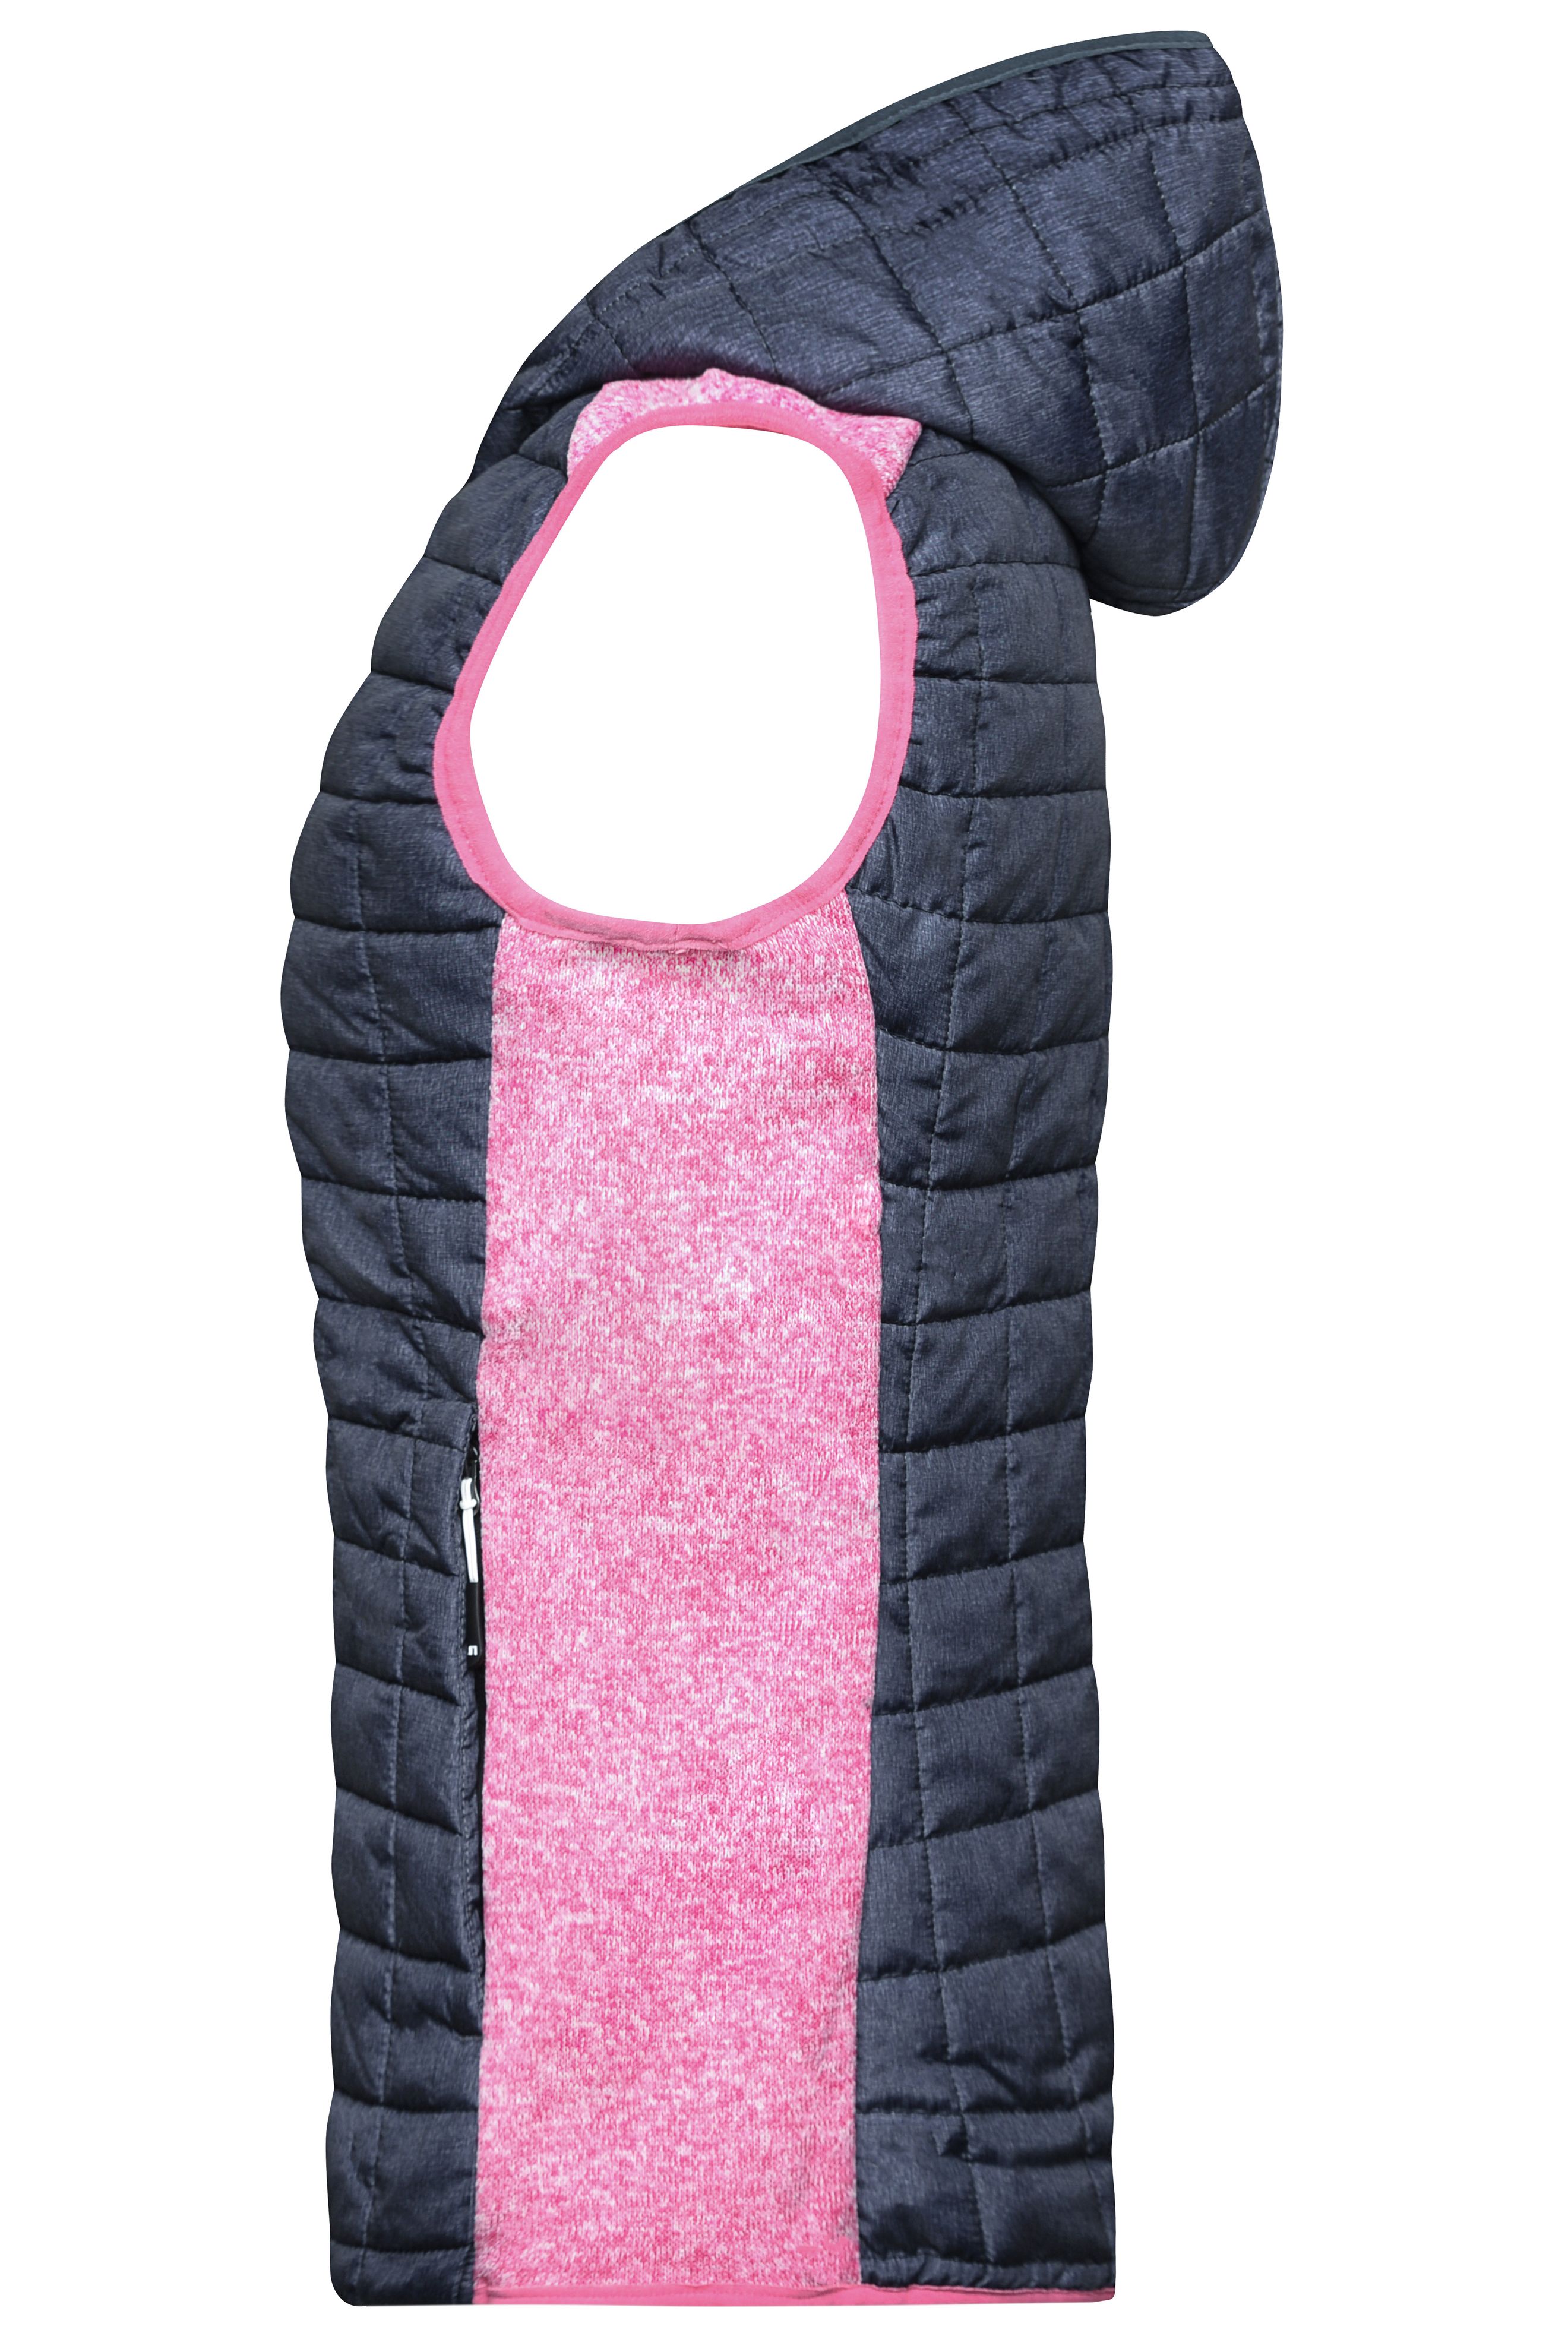 Ladies' Knitted Hybrid Vest JN767 Weste im stylischen Materialmix